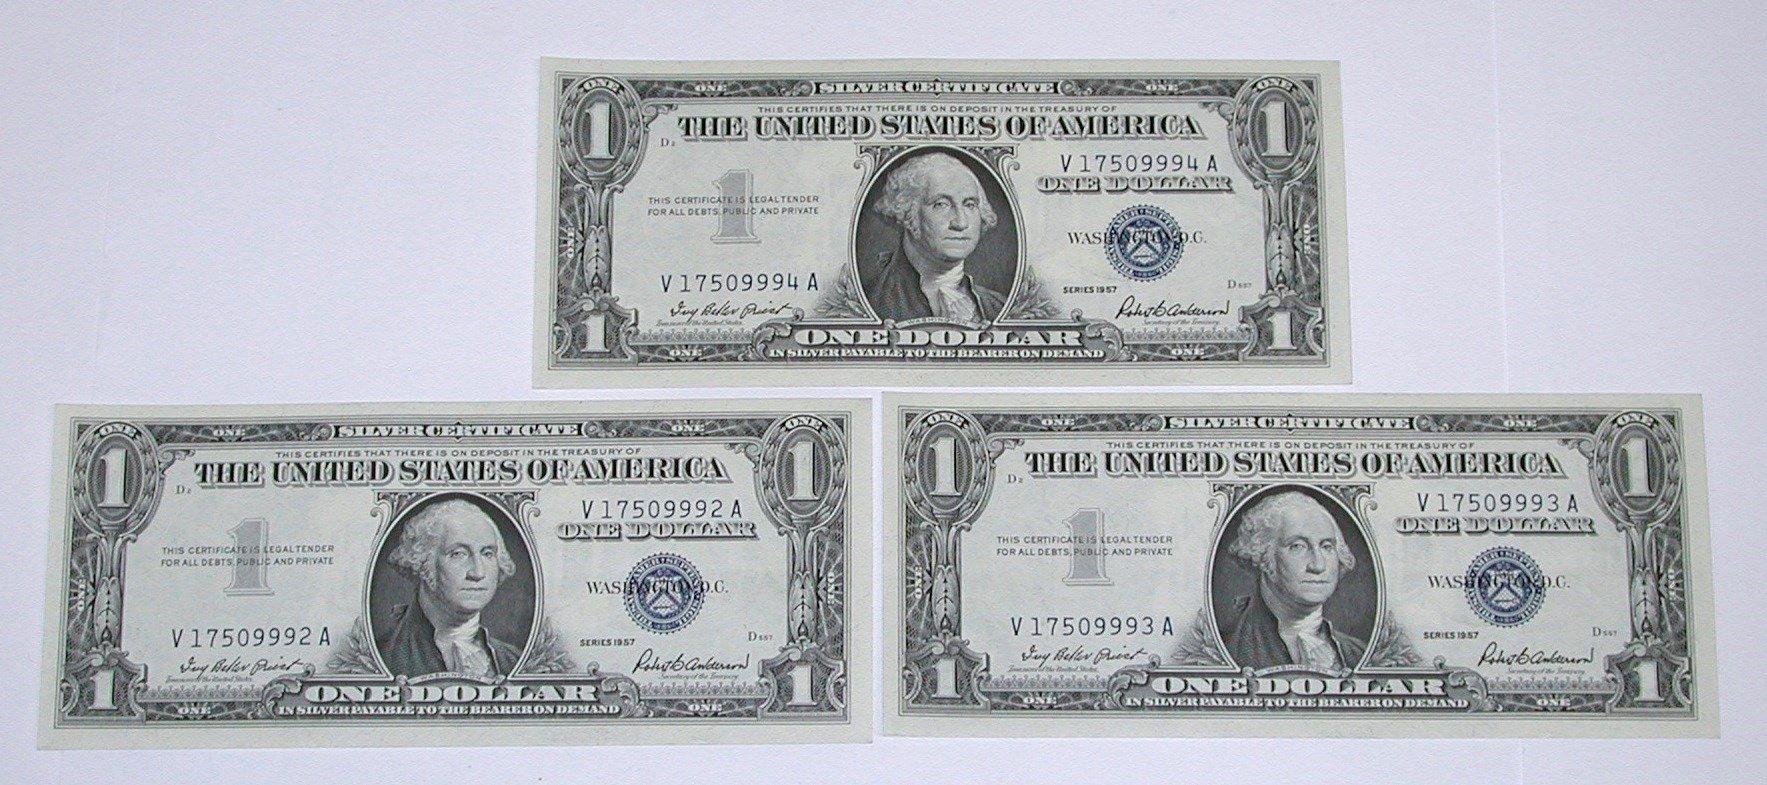 THREE (3) CONSECUTIVE UNC 1957 $1 SILVER CERTIFICATES